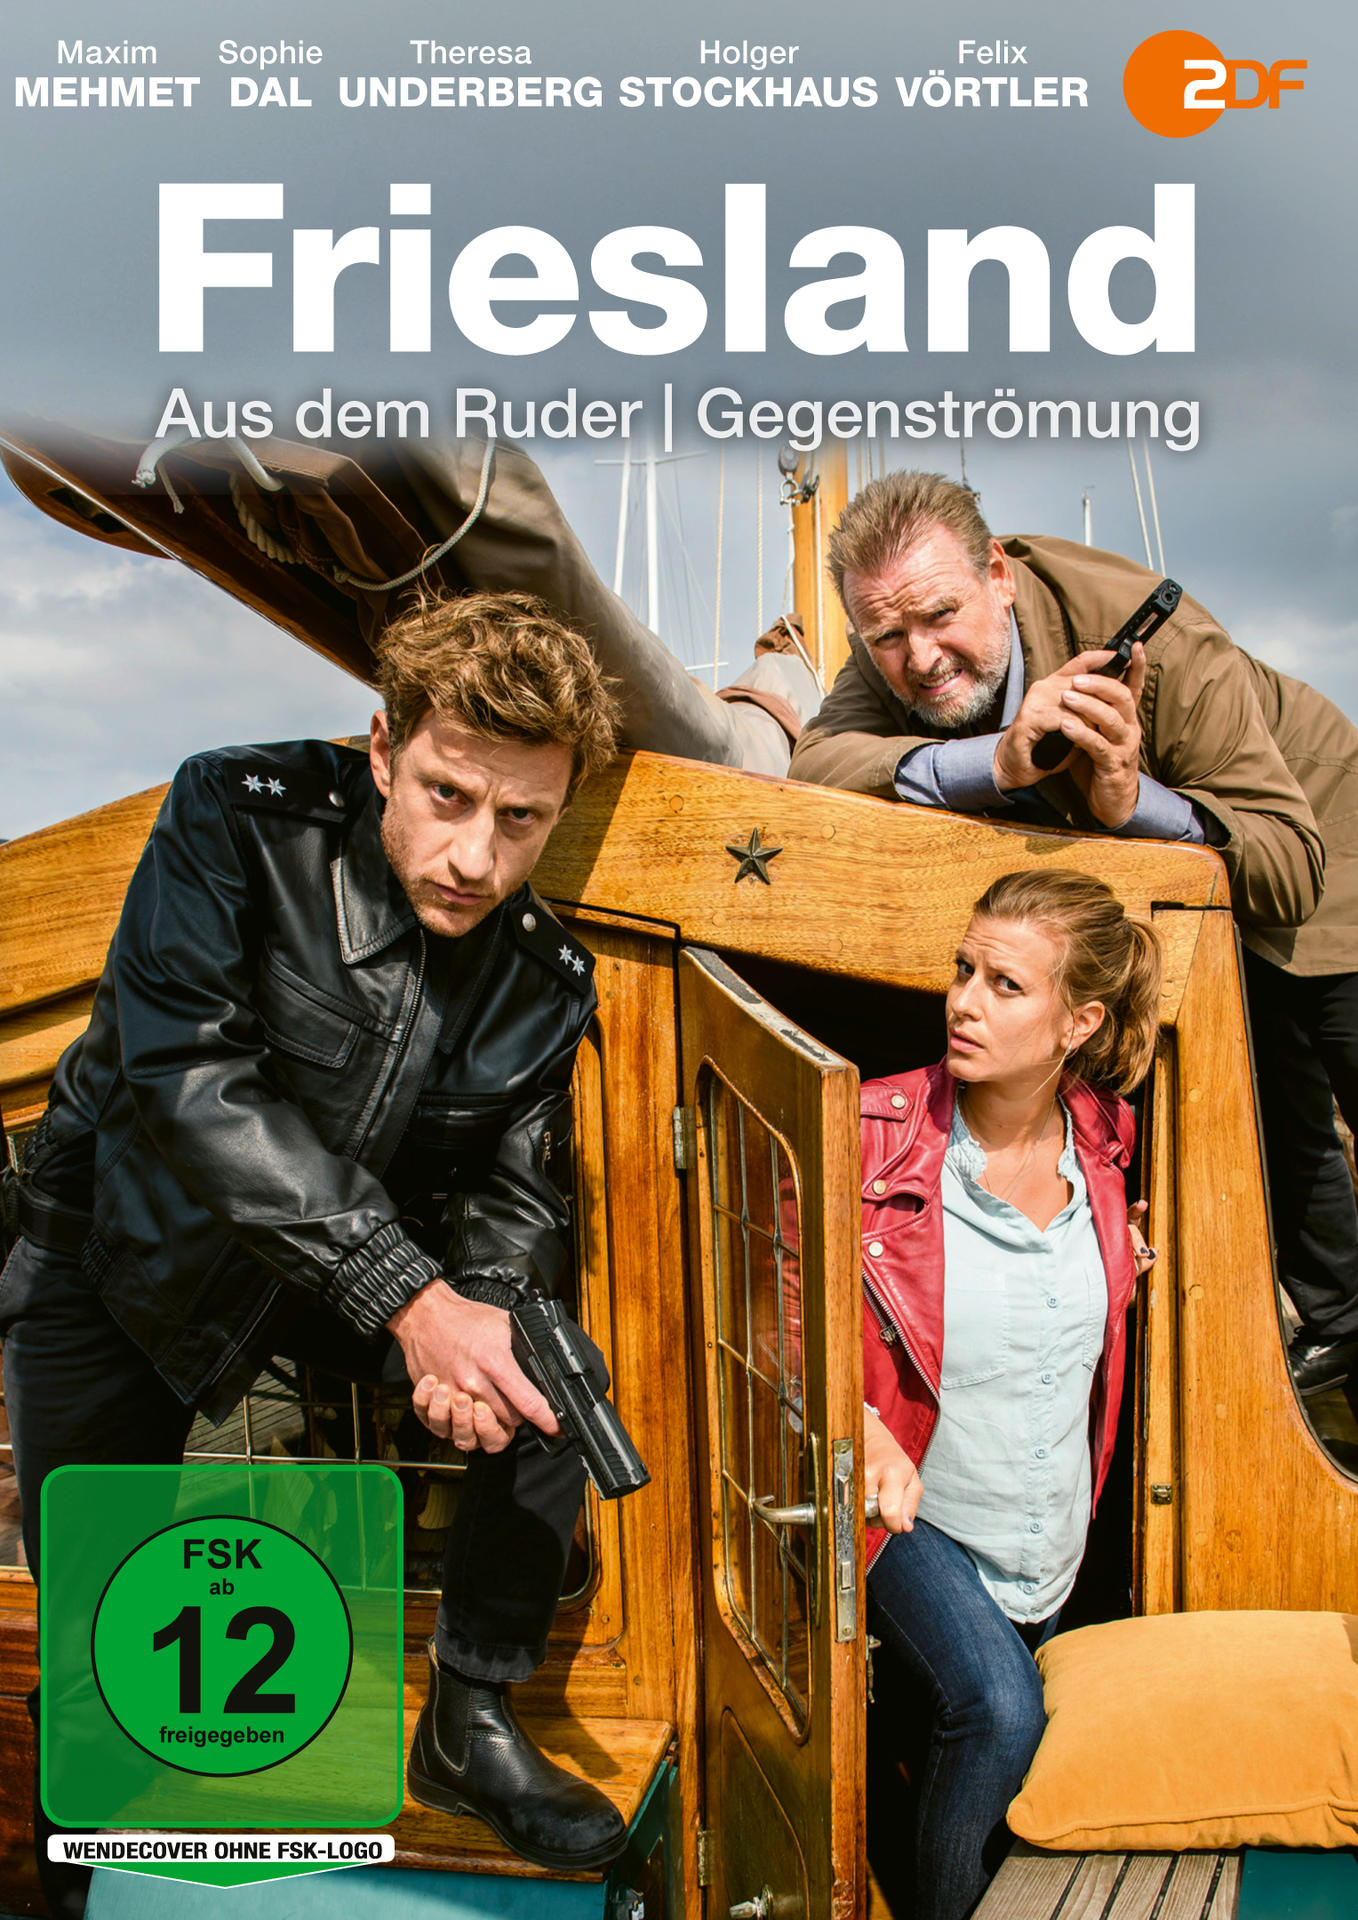 Friesland dem / - Ruder Gegenströmung Aus DVD